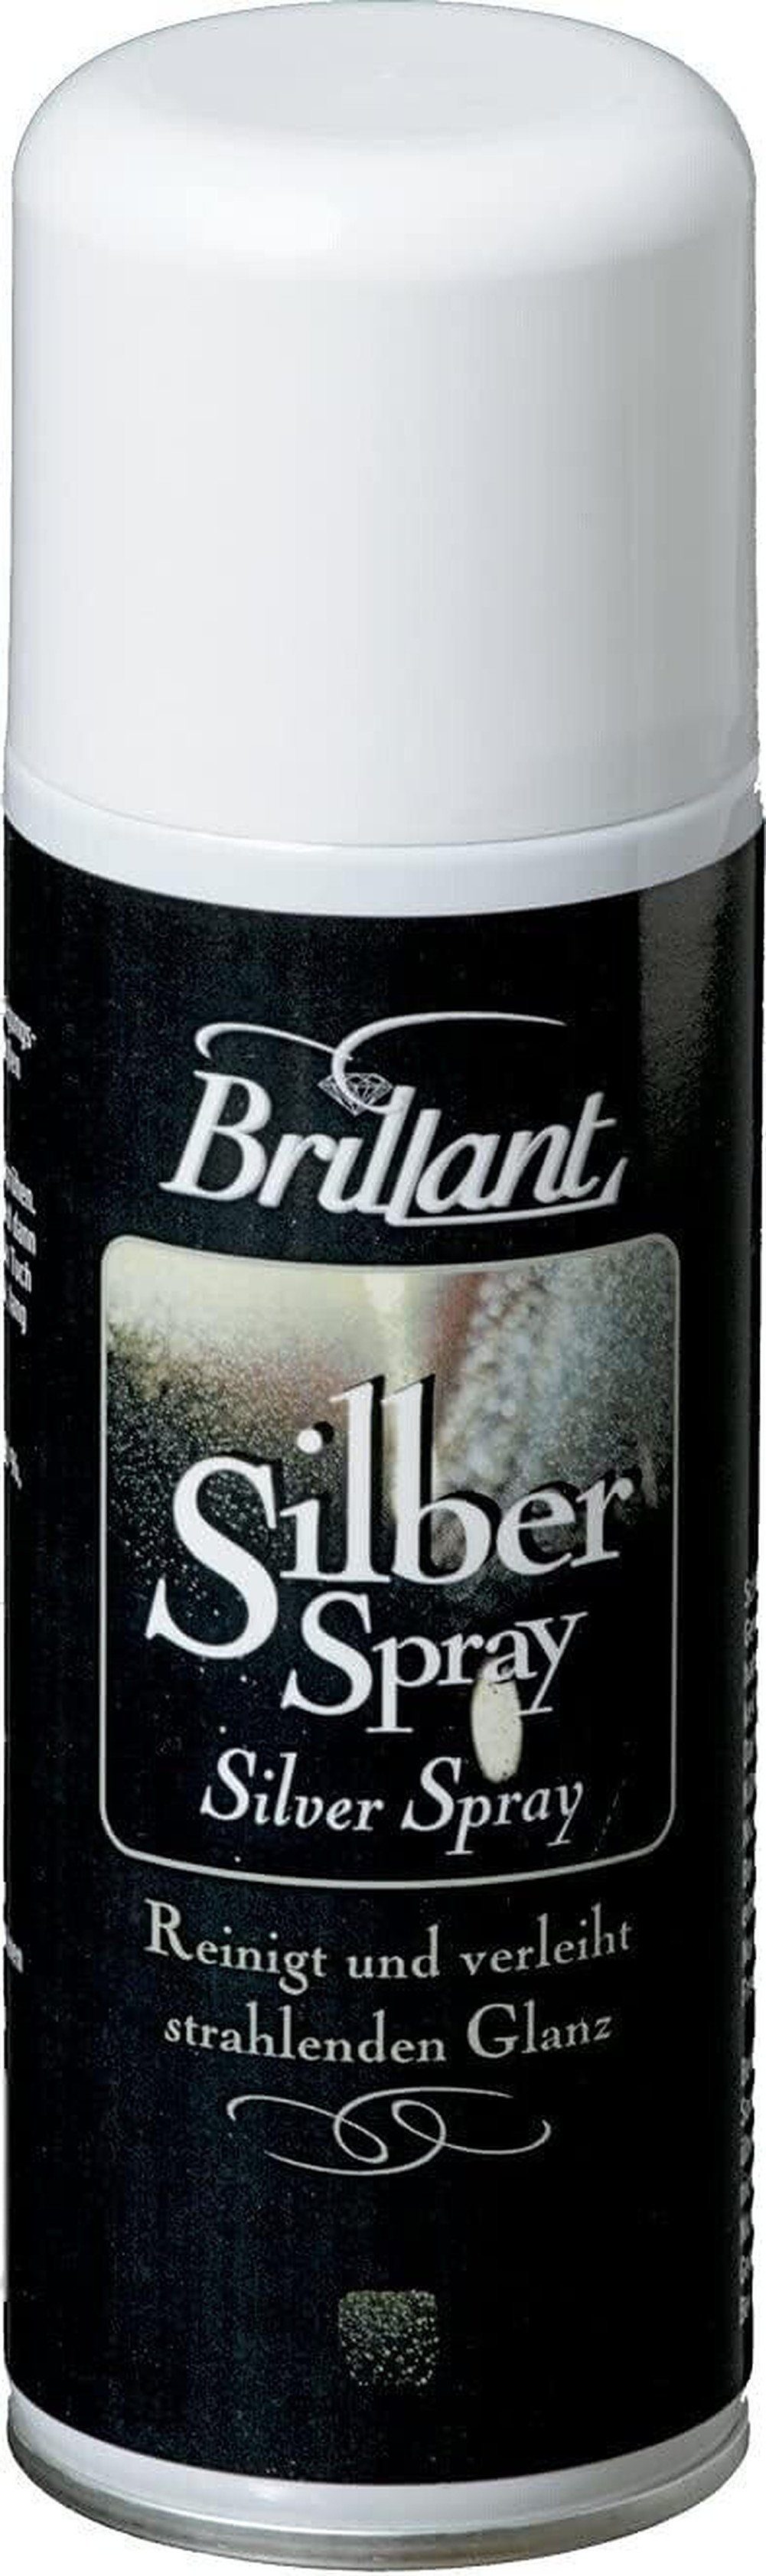 Brillant 200 verleiht Brillant Chromreiniger Silberspray ml & Glanz reinigt strahlenden